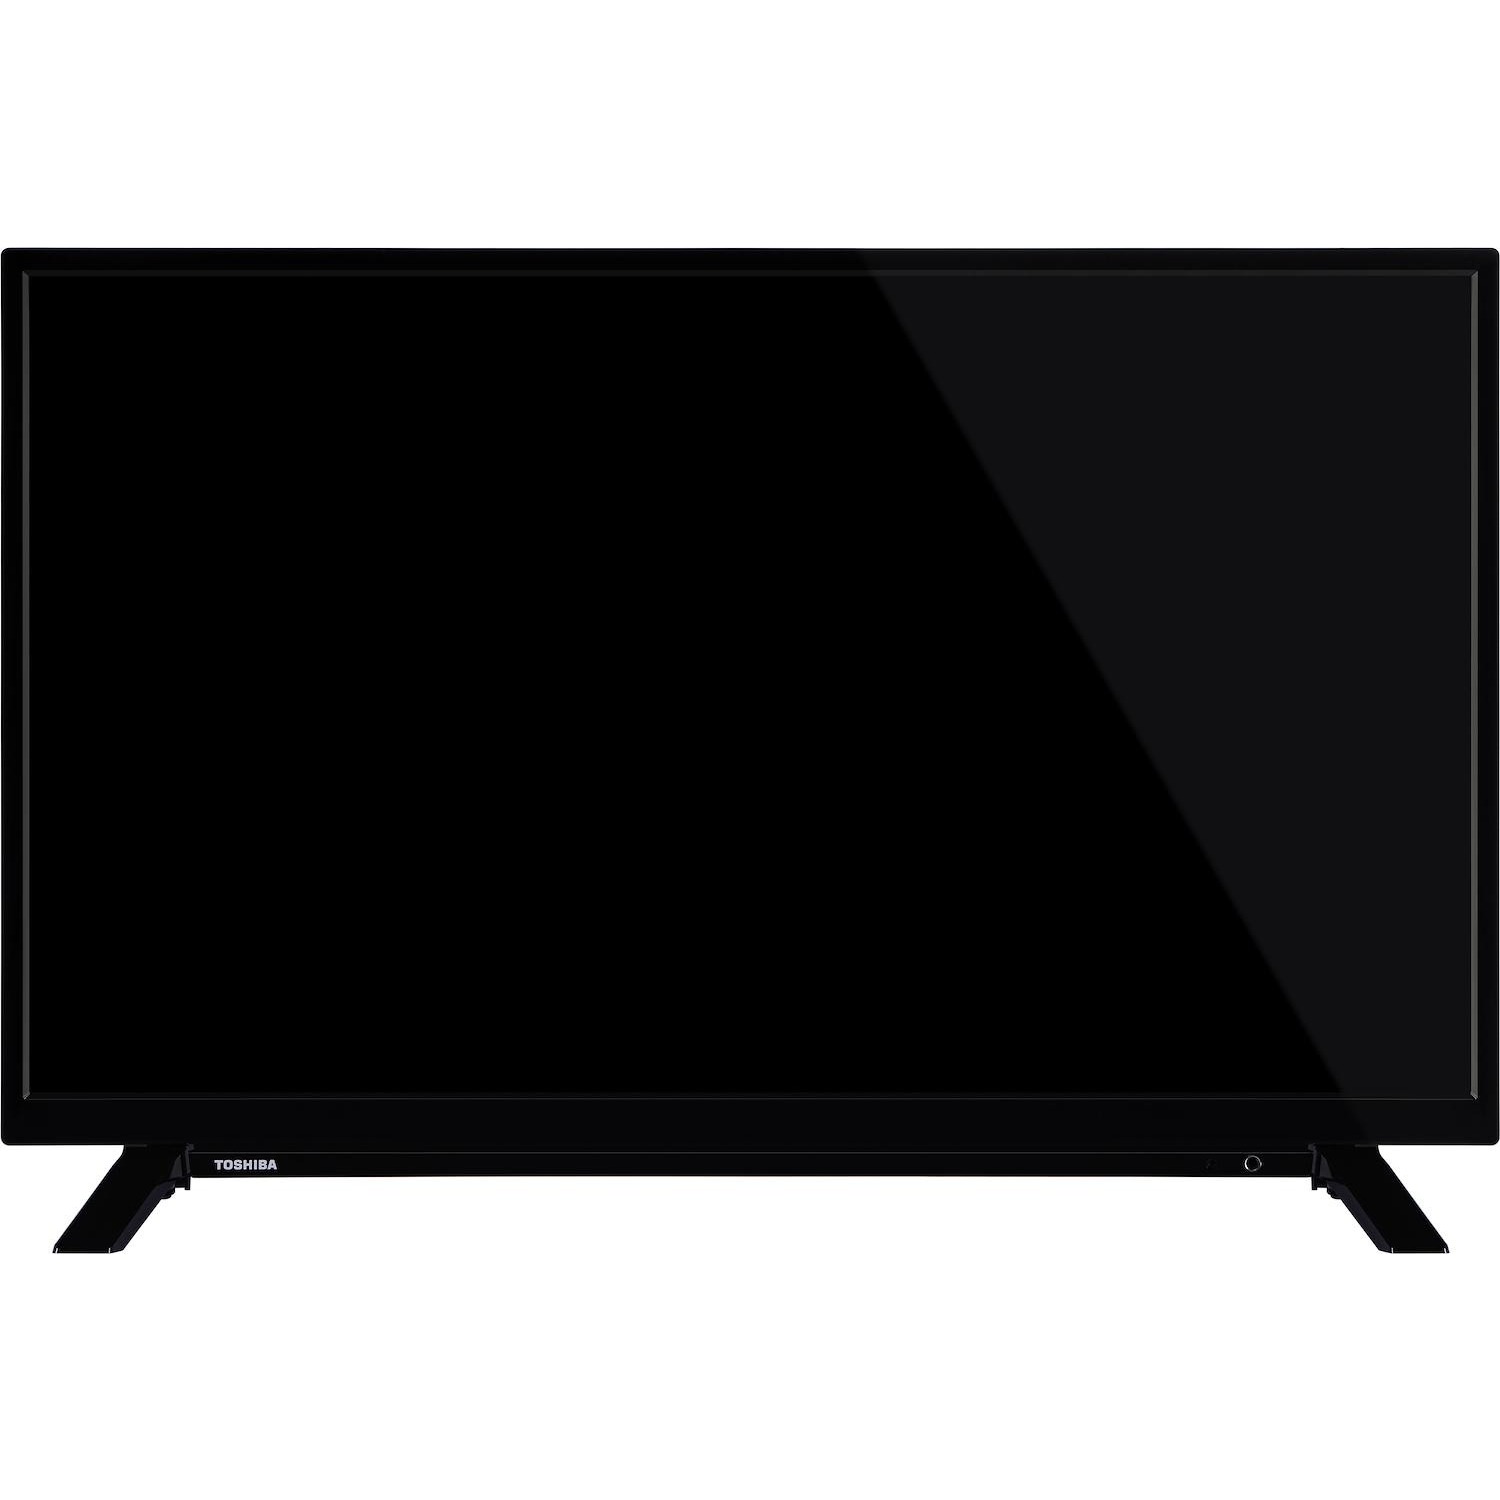 Immagine per TV LED Smart Android Toshiba 32WA2063DAI da DIMOStore